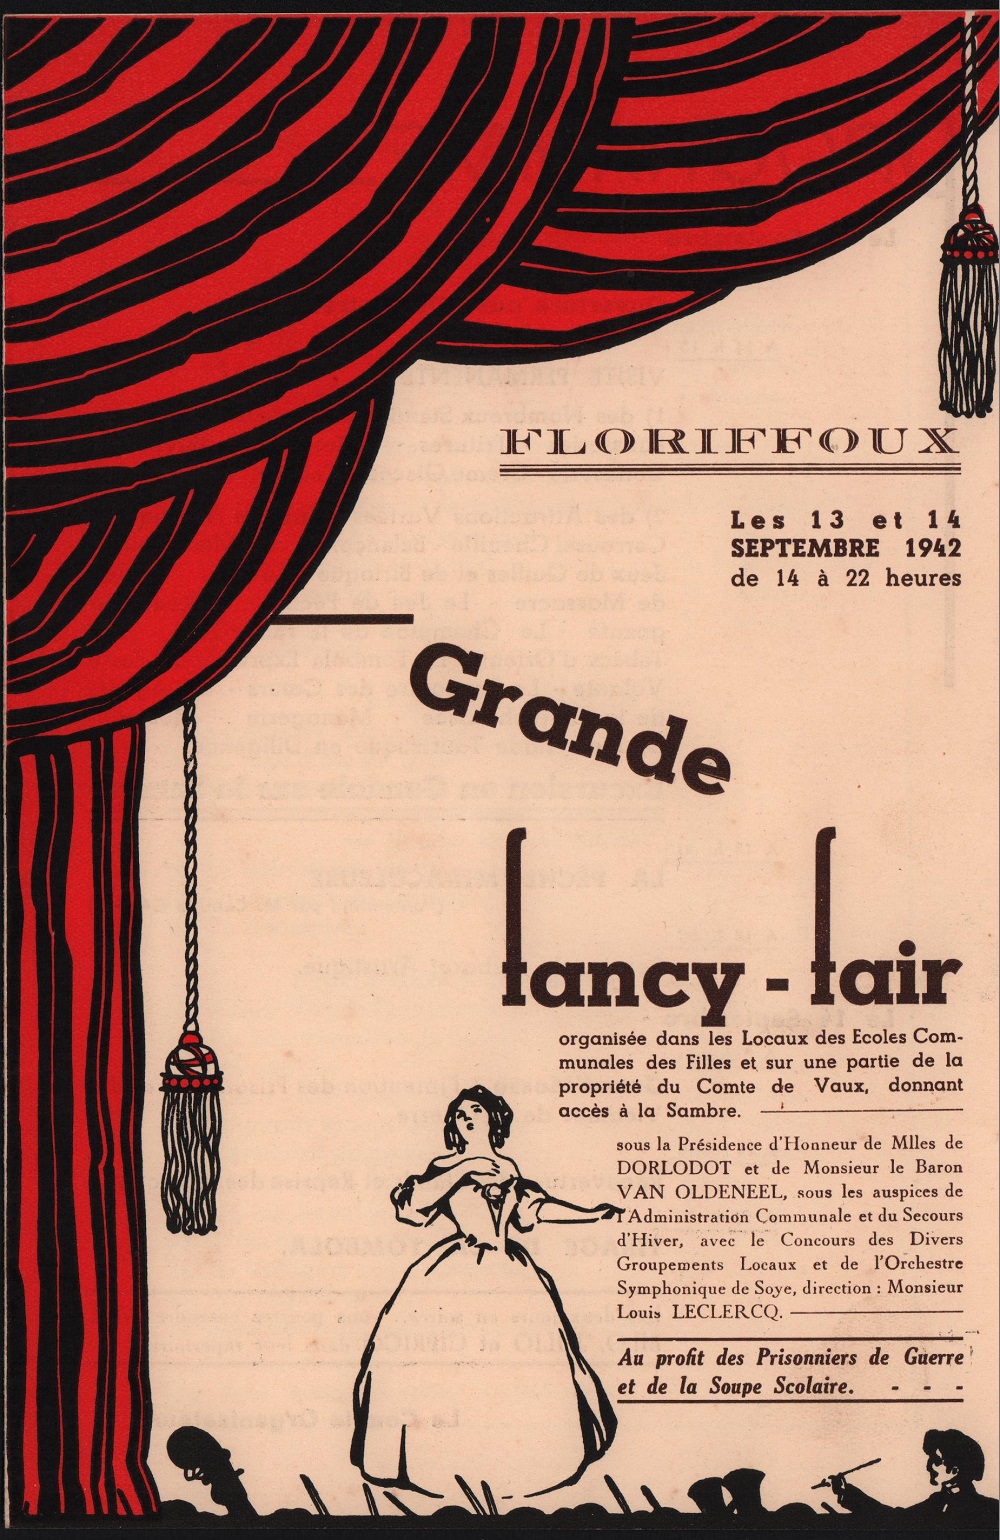 Floriffoux – fancy-fair – 13 et 14 septembre 1942